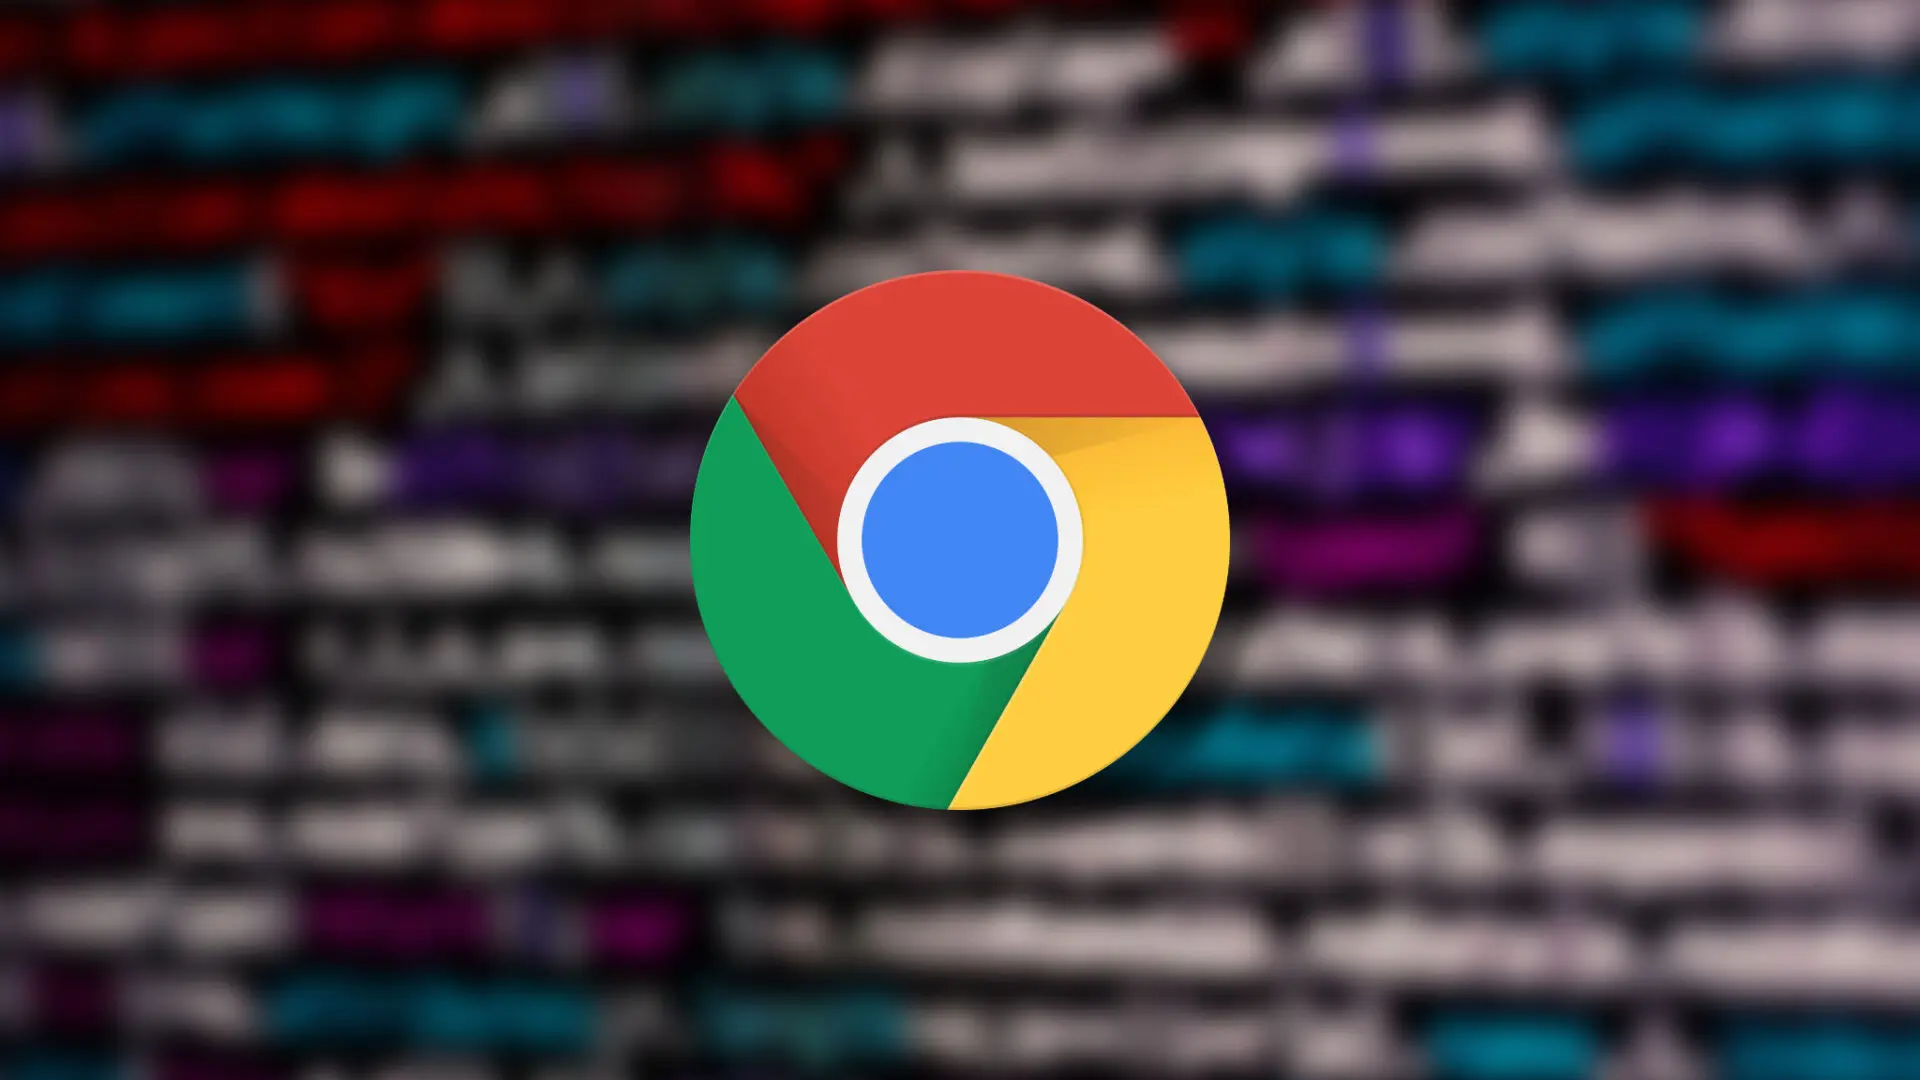 Chrome phiên bản 94.0.4606.61 vá một lỗi 'zero-day' nghiêm trọng